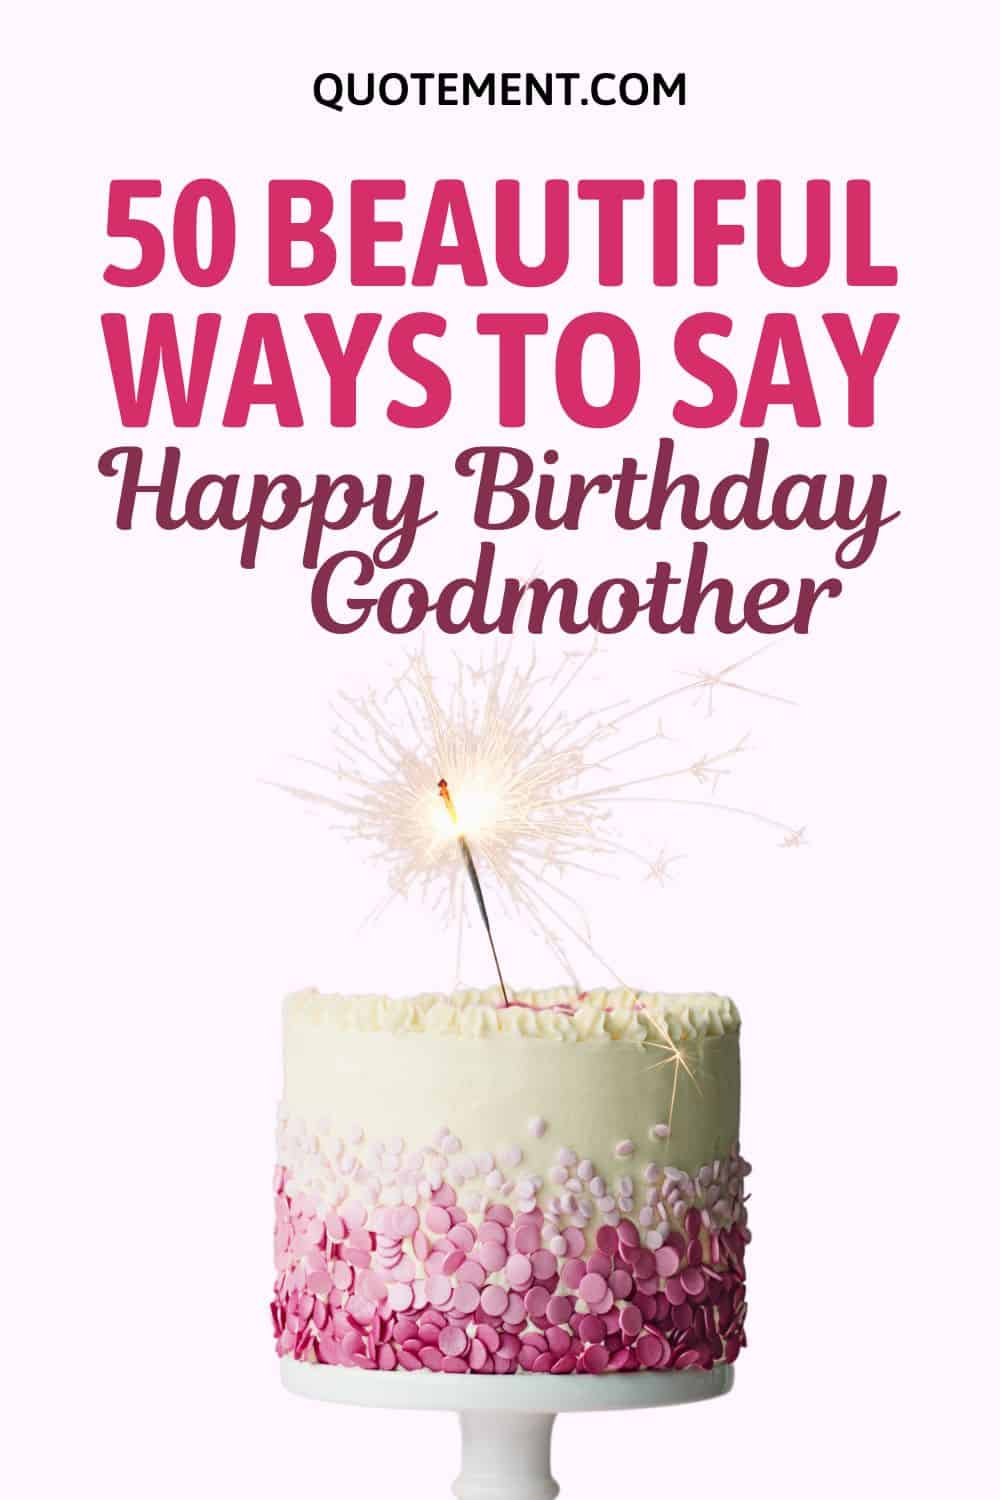 50 Truly Wonderful Ways To Say Happy Birthday Godmother
